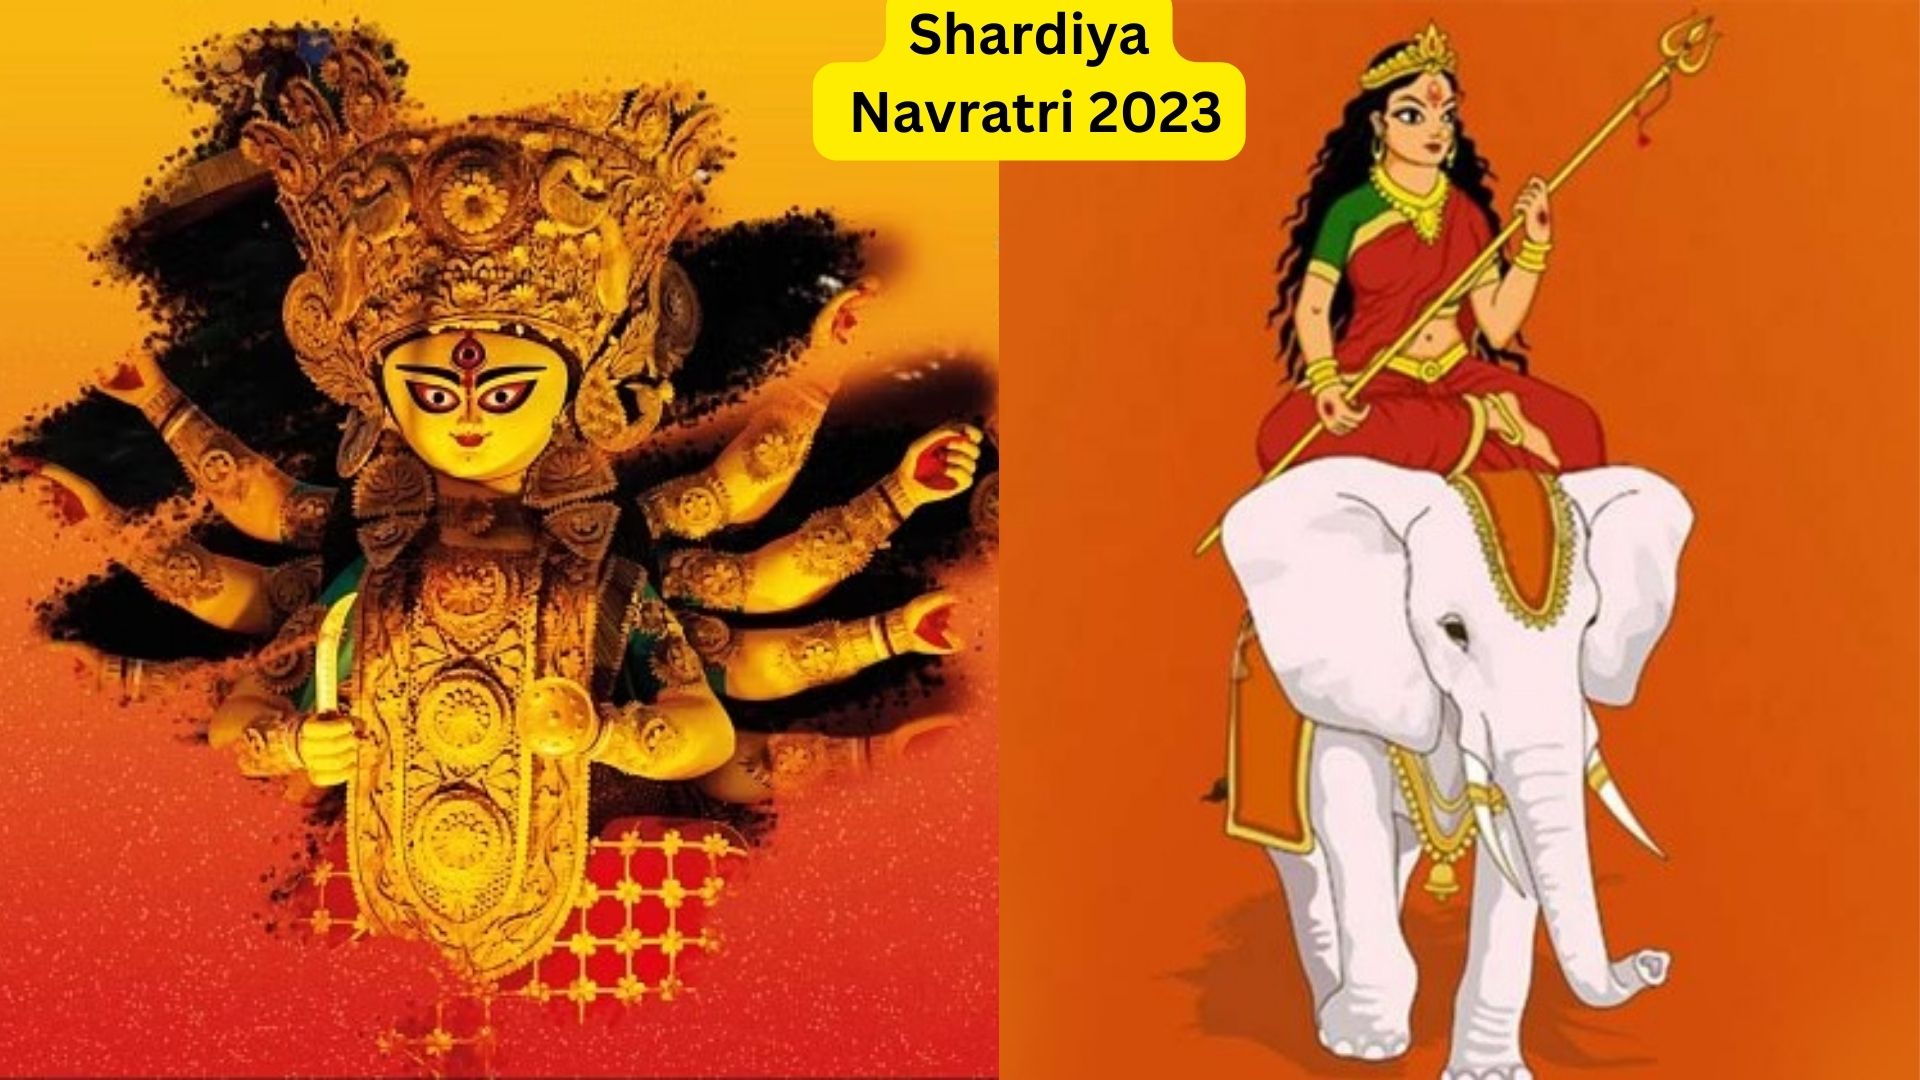 Navratri 2023: इस साल किस पर बैठकर आएँगी माँ दुर्गा, जानें क्या होगा शुभ-अशुभ प्रभाव